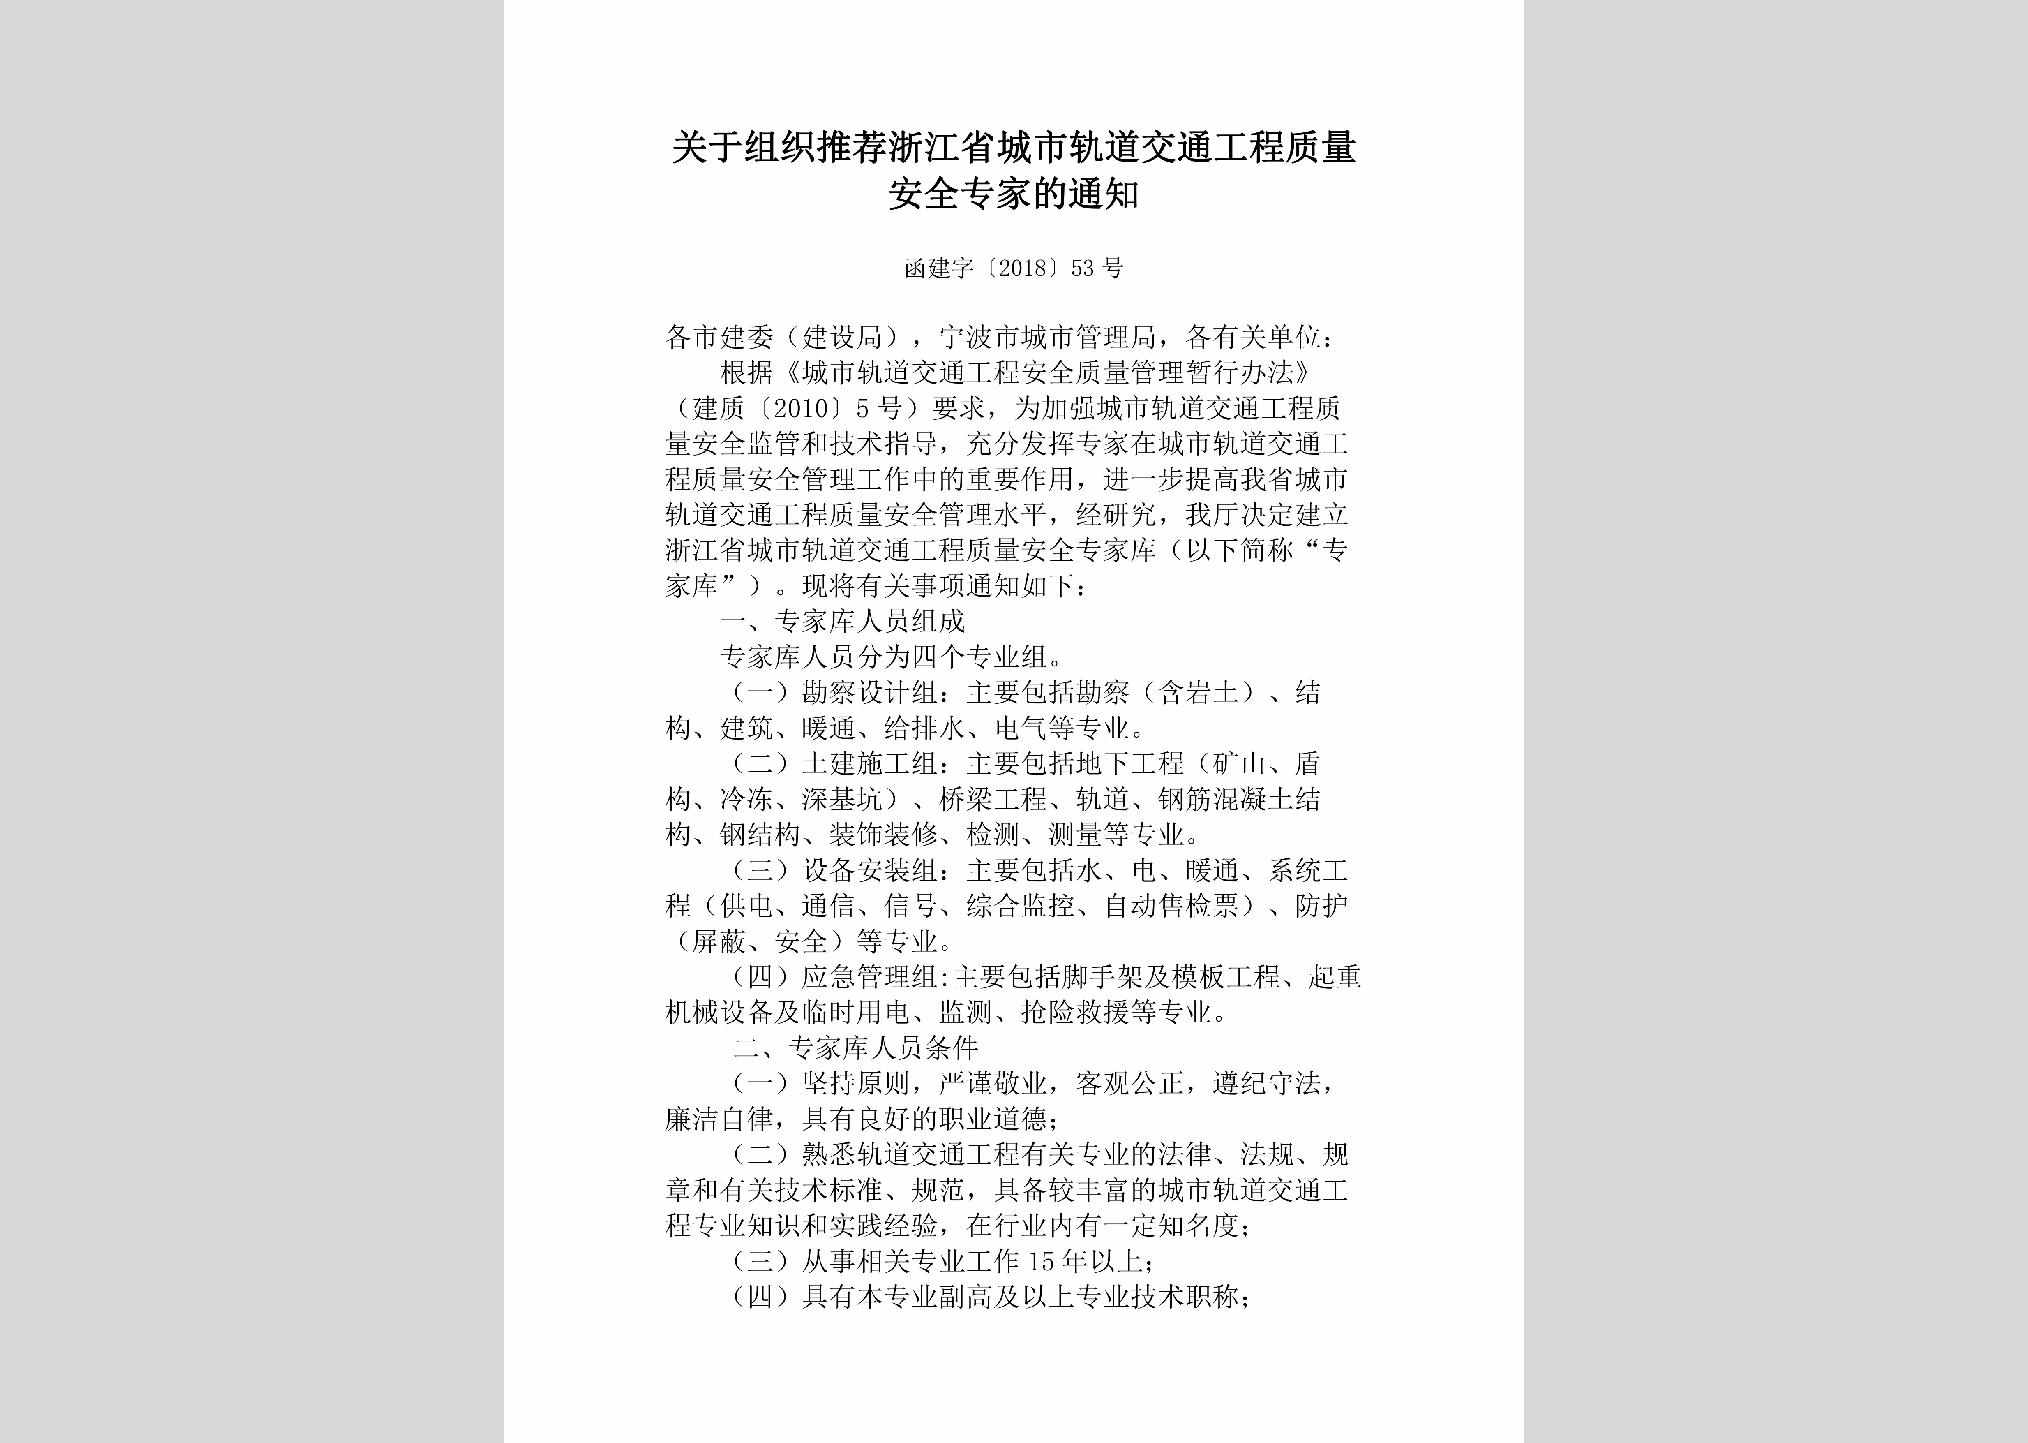 函建字[2018]53号：关于组织推荐浙江省城市轨道交通工程质量安全专家的通知